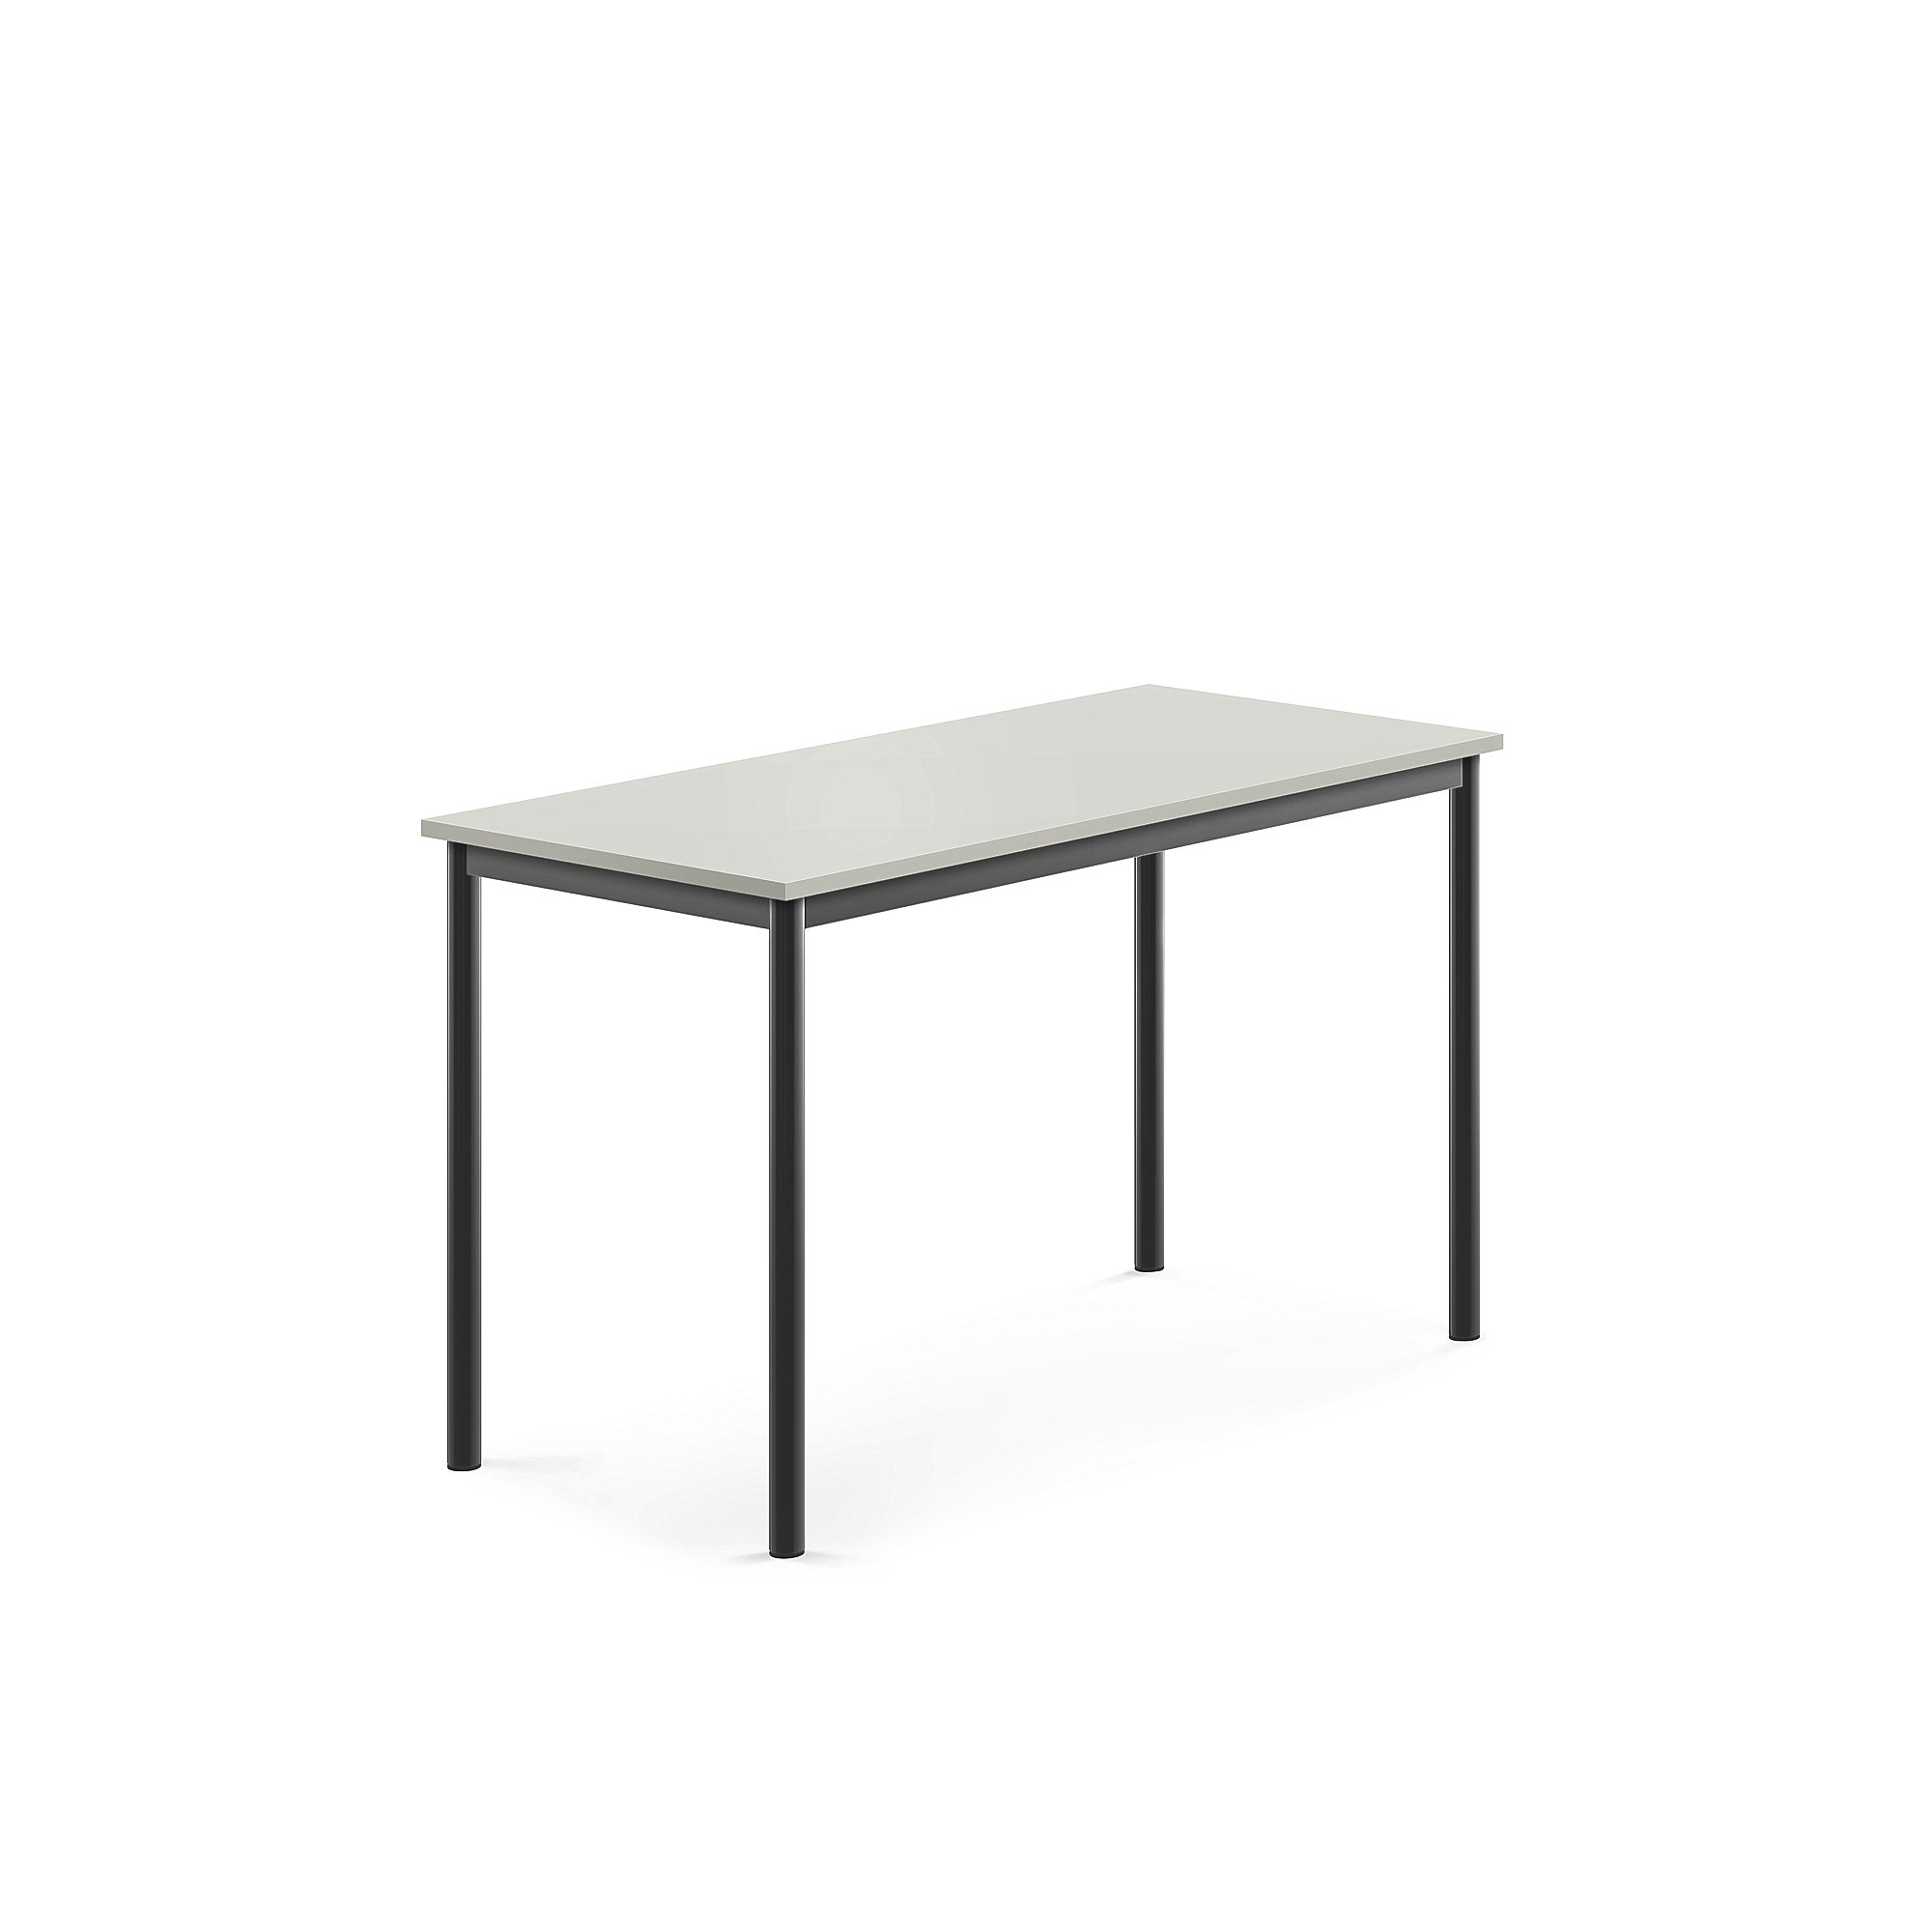 Stůl BORÅS, 1200x600x720 mm, antracitově šedé nohy, HPL deska, šedá